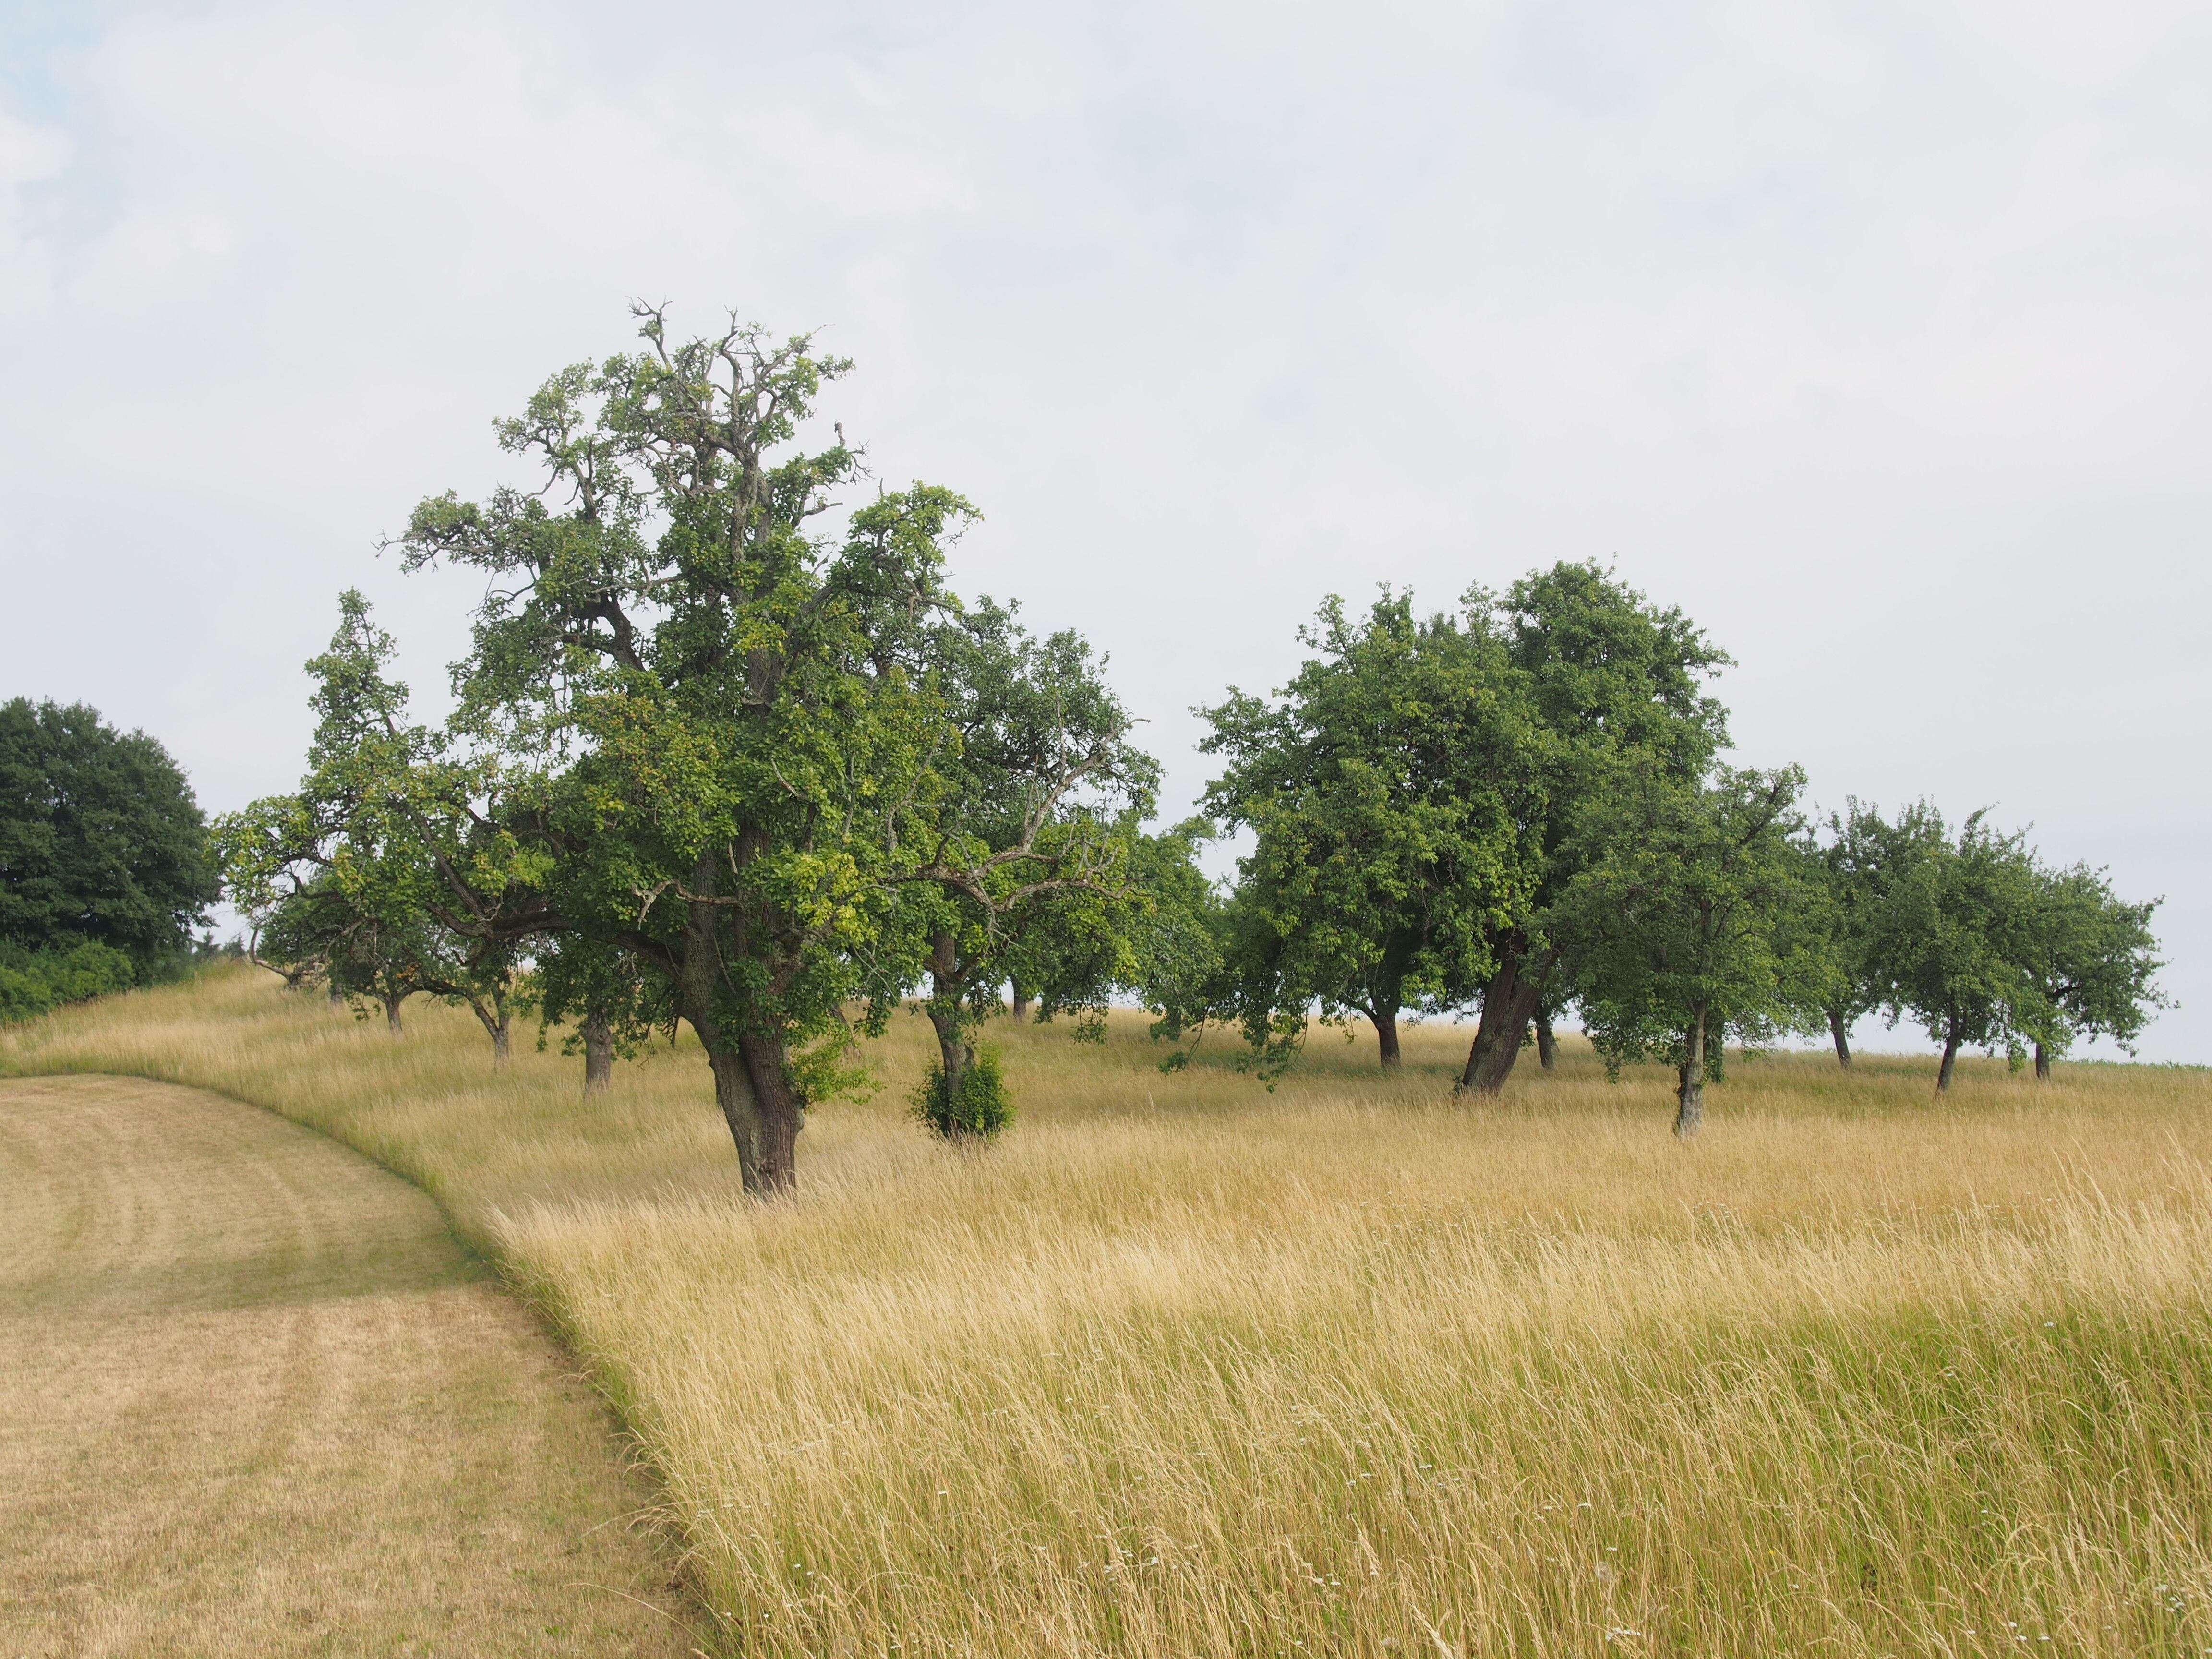 Der Erhalt von Streuobstbäumen bereichert unsere Kulturlandschaft. Foto: Landratsamt Lichtenfels/Thomas Fischer